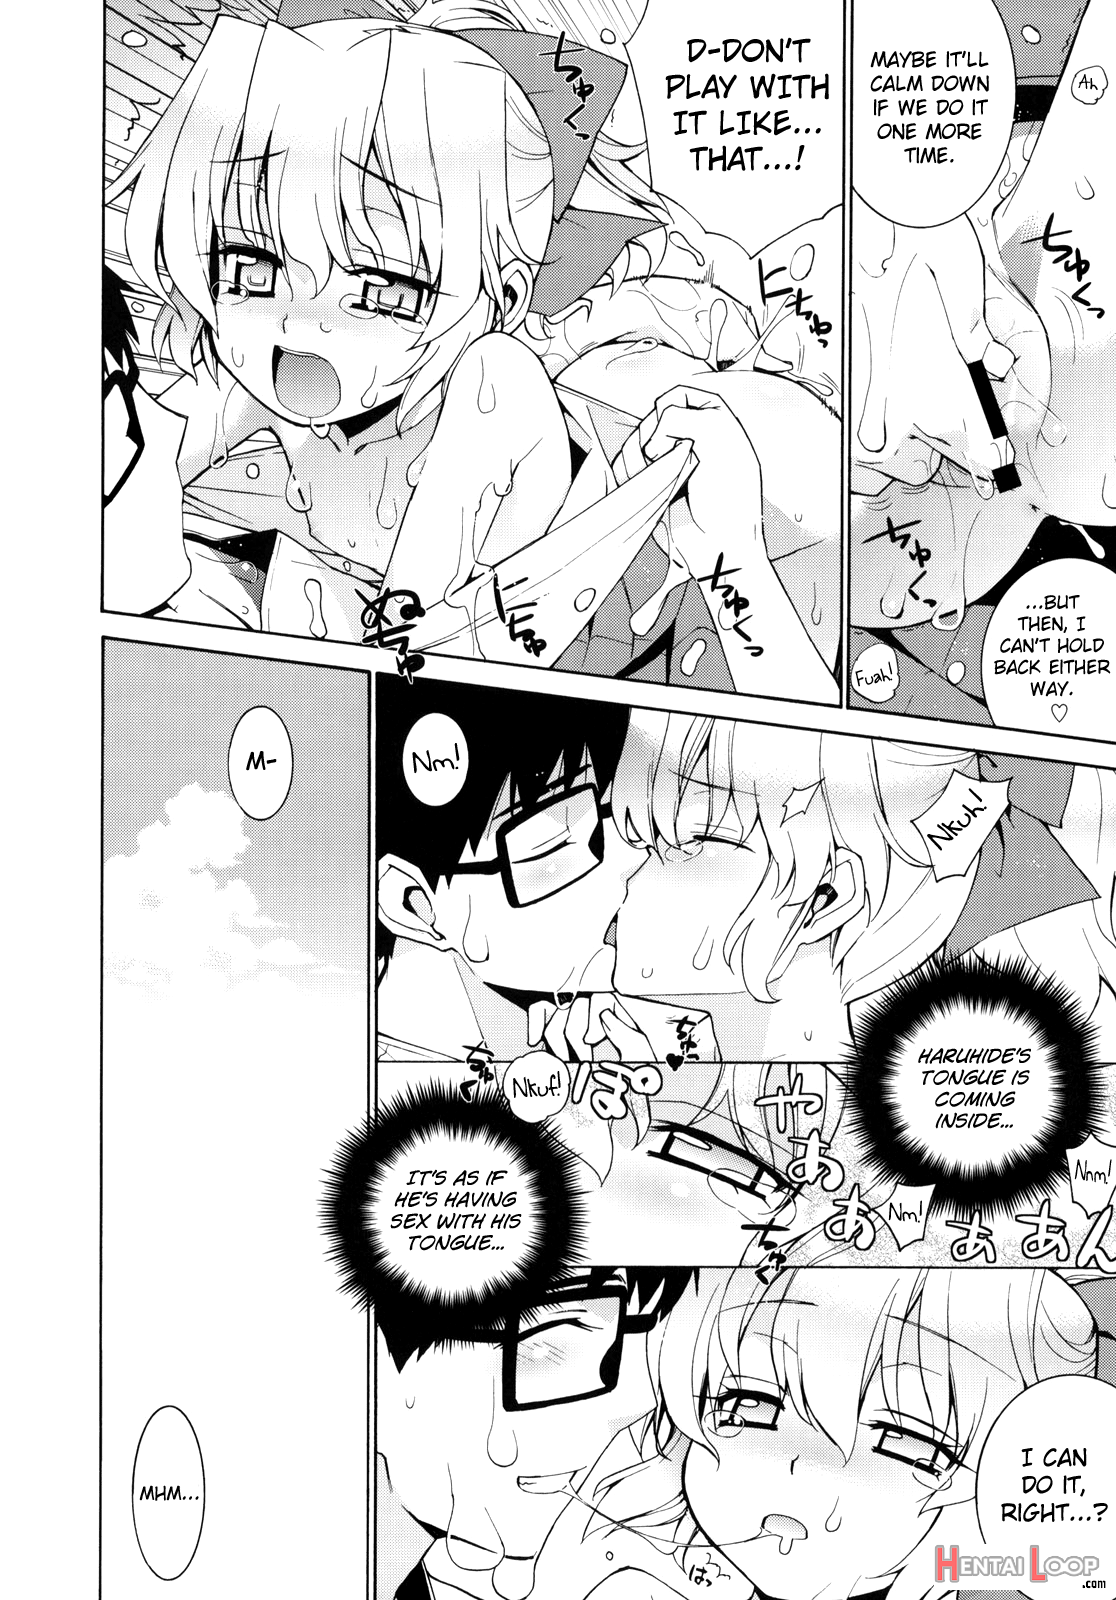 Kanara-sama No Nichijou 2 page 15